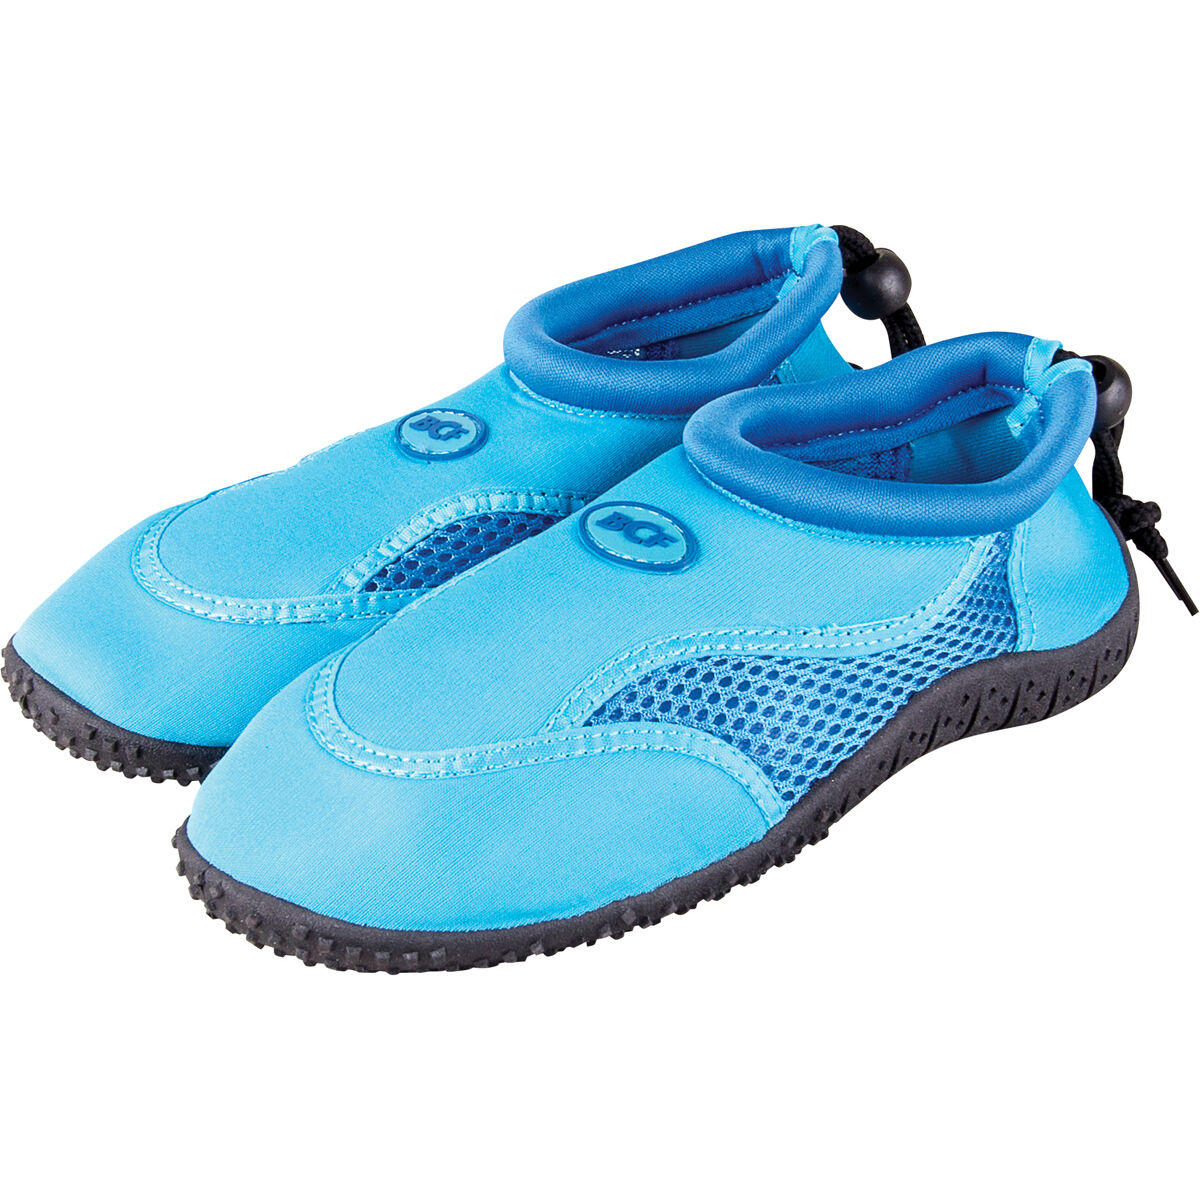 aqua shoes australia